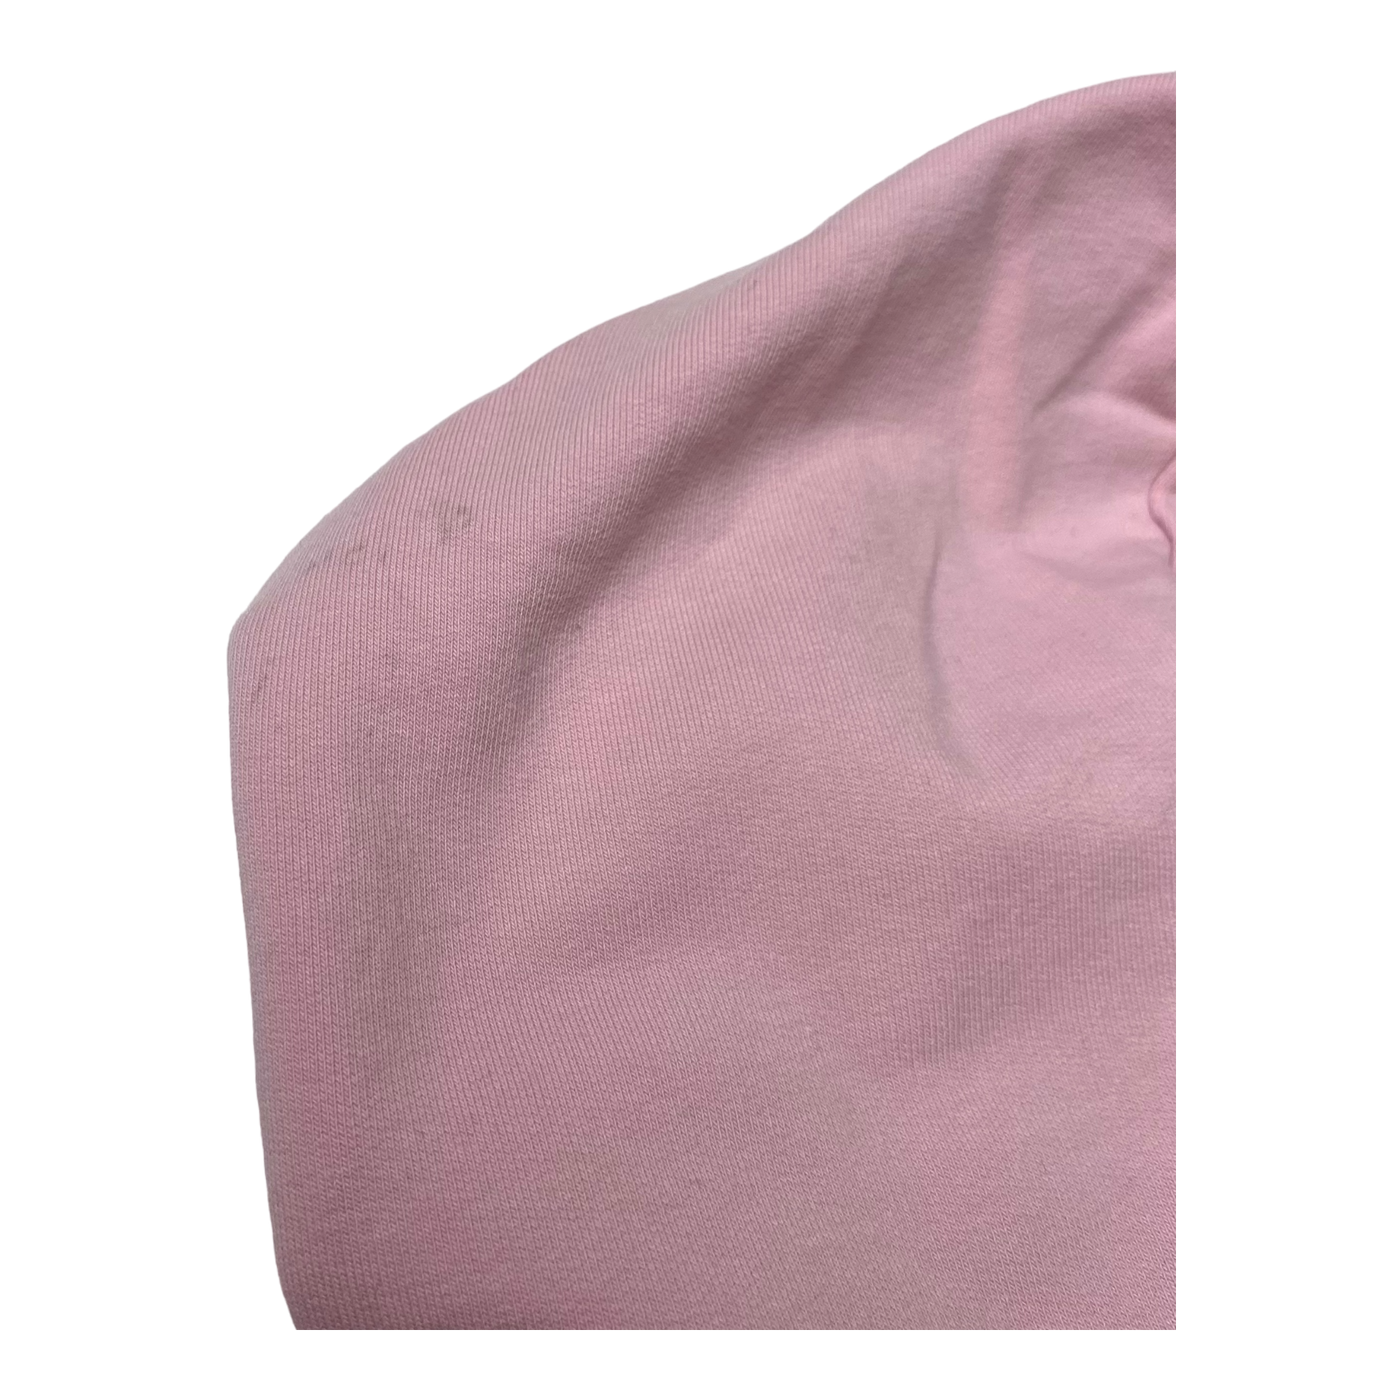 R/H mickey hoodie, pink/platinum | 100cm